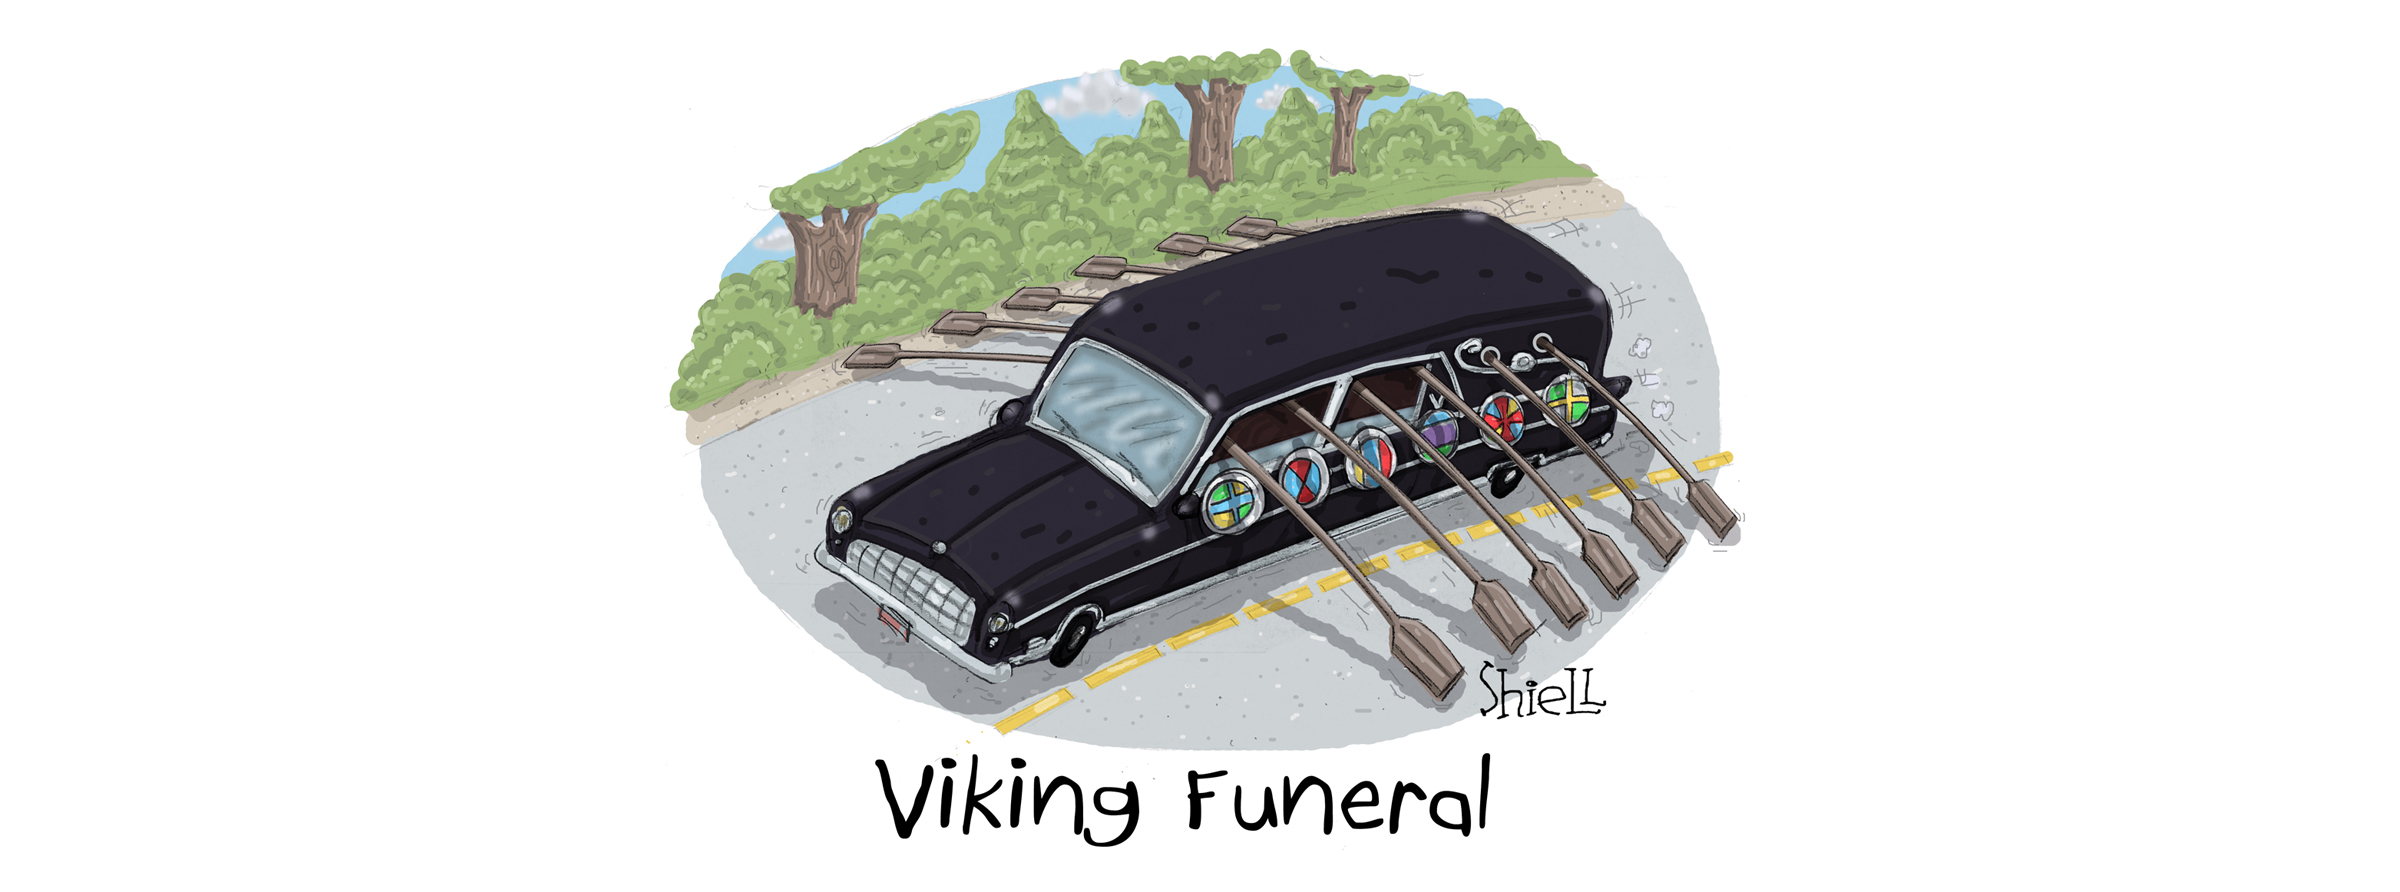 16_Viking_Funeral_06.jpg